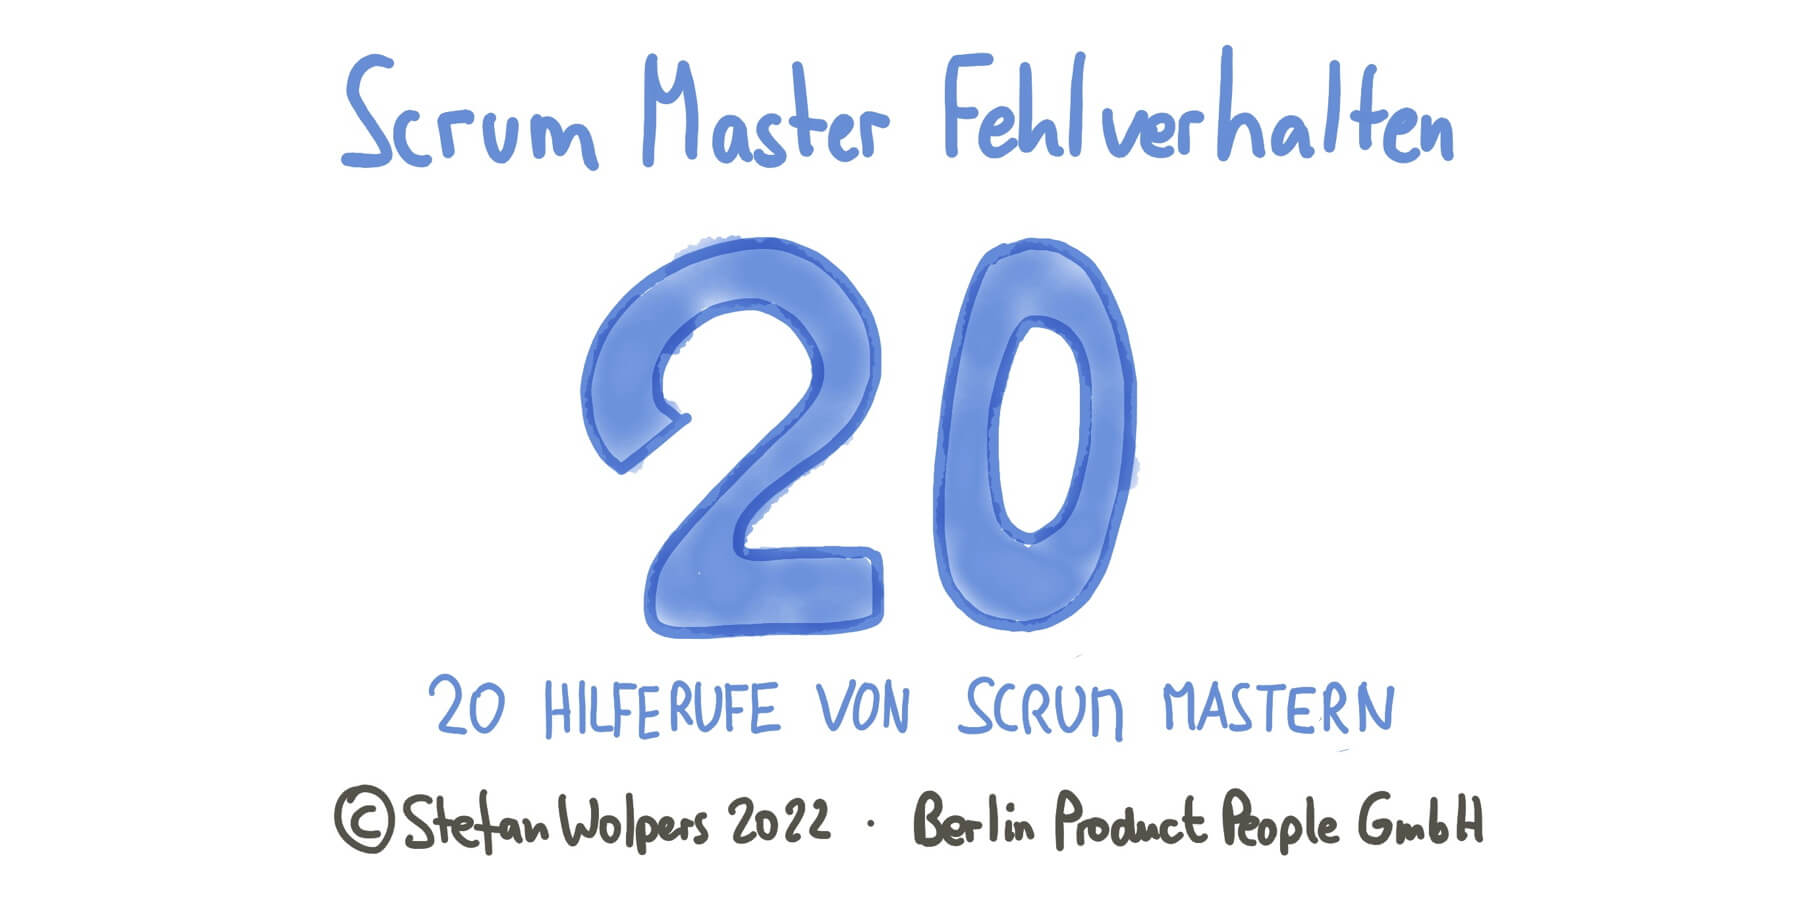 Scrum Master Fehlverhalten — 20 Hilferufe von Scrum Mastern — Berlin Product People GmbH